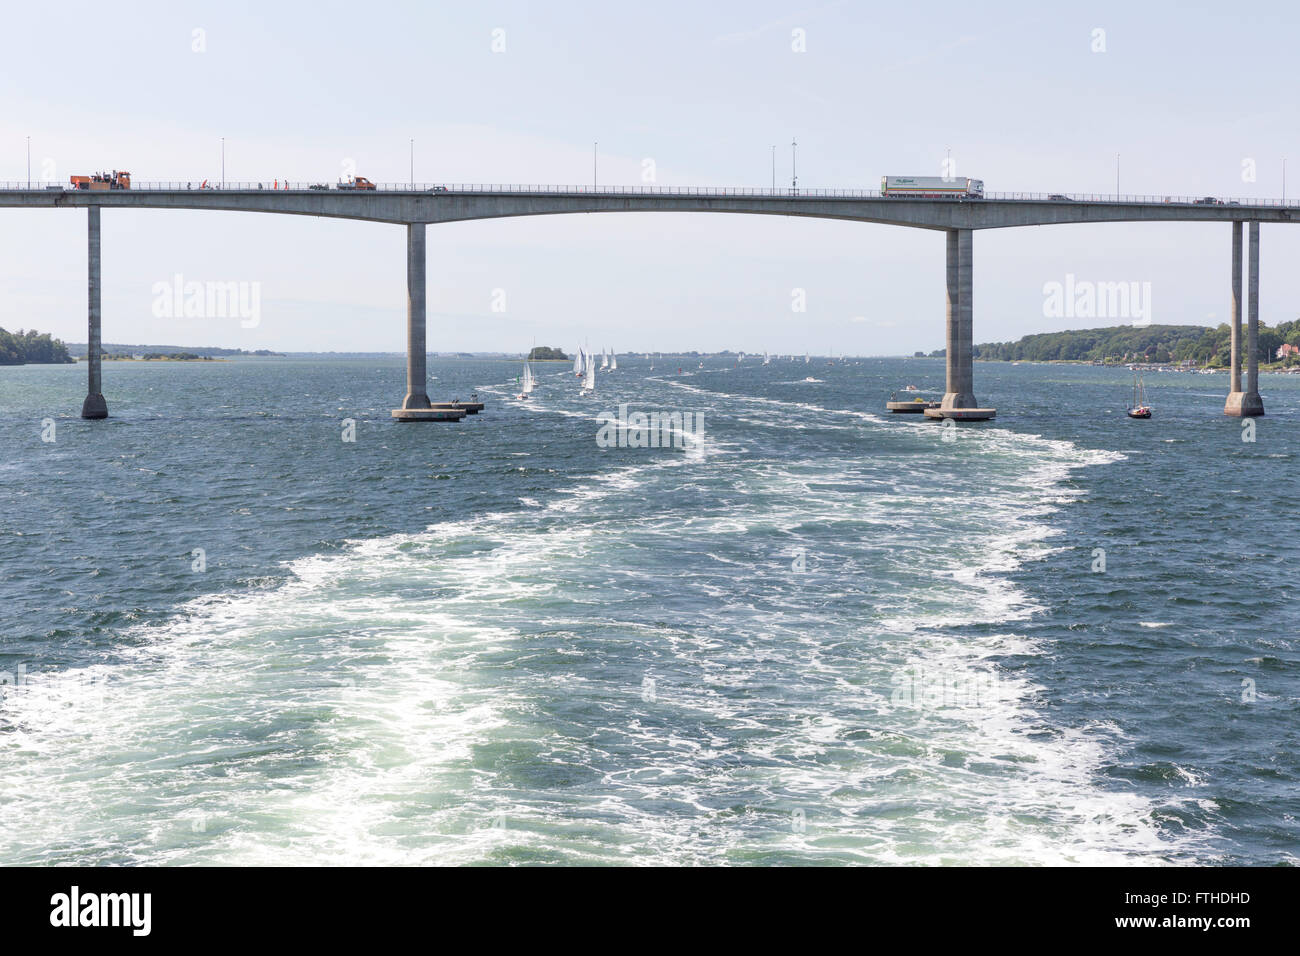 Il ponte Svendborgsund e barche a vela seguendo la scia di un traghetto passeggeri nel porto di Svendborg, Danimarca Foto Stock